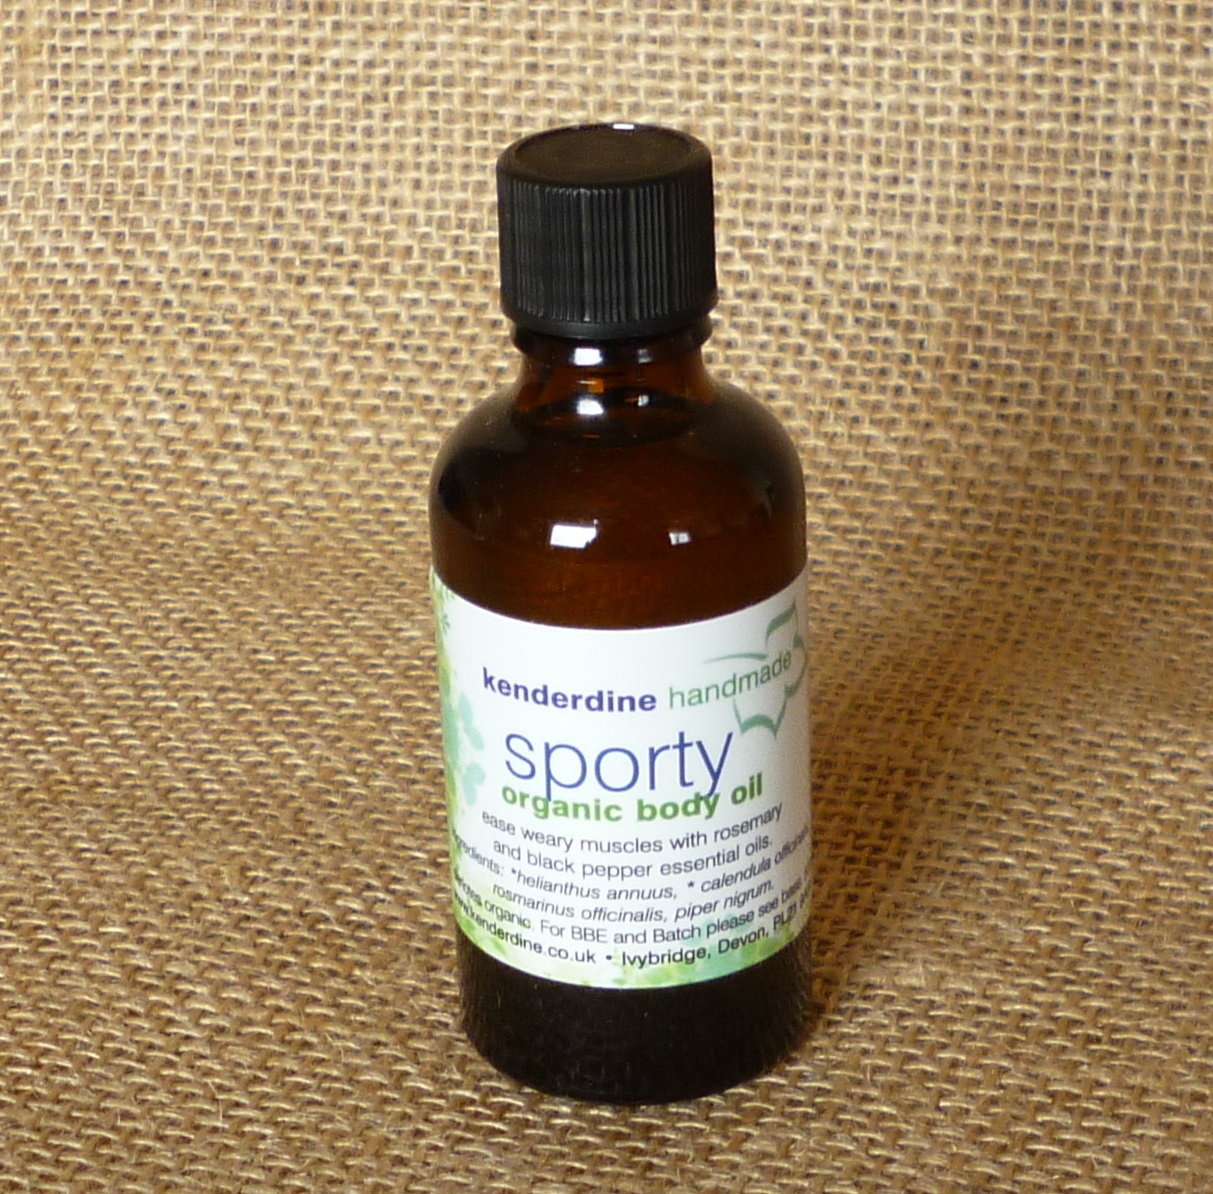 Sporty body oil